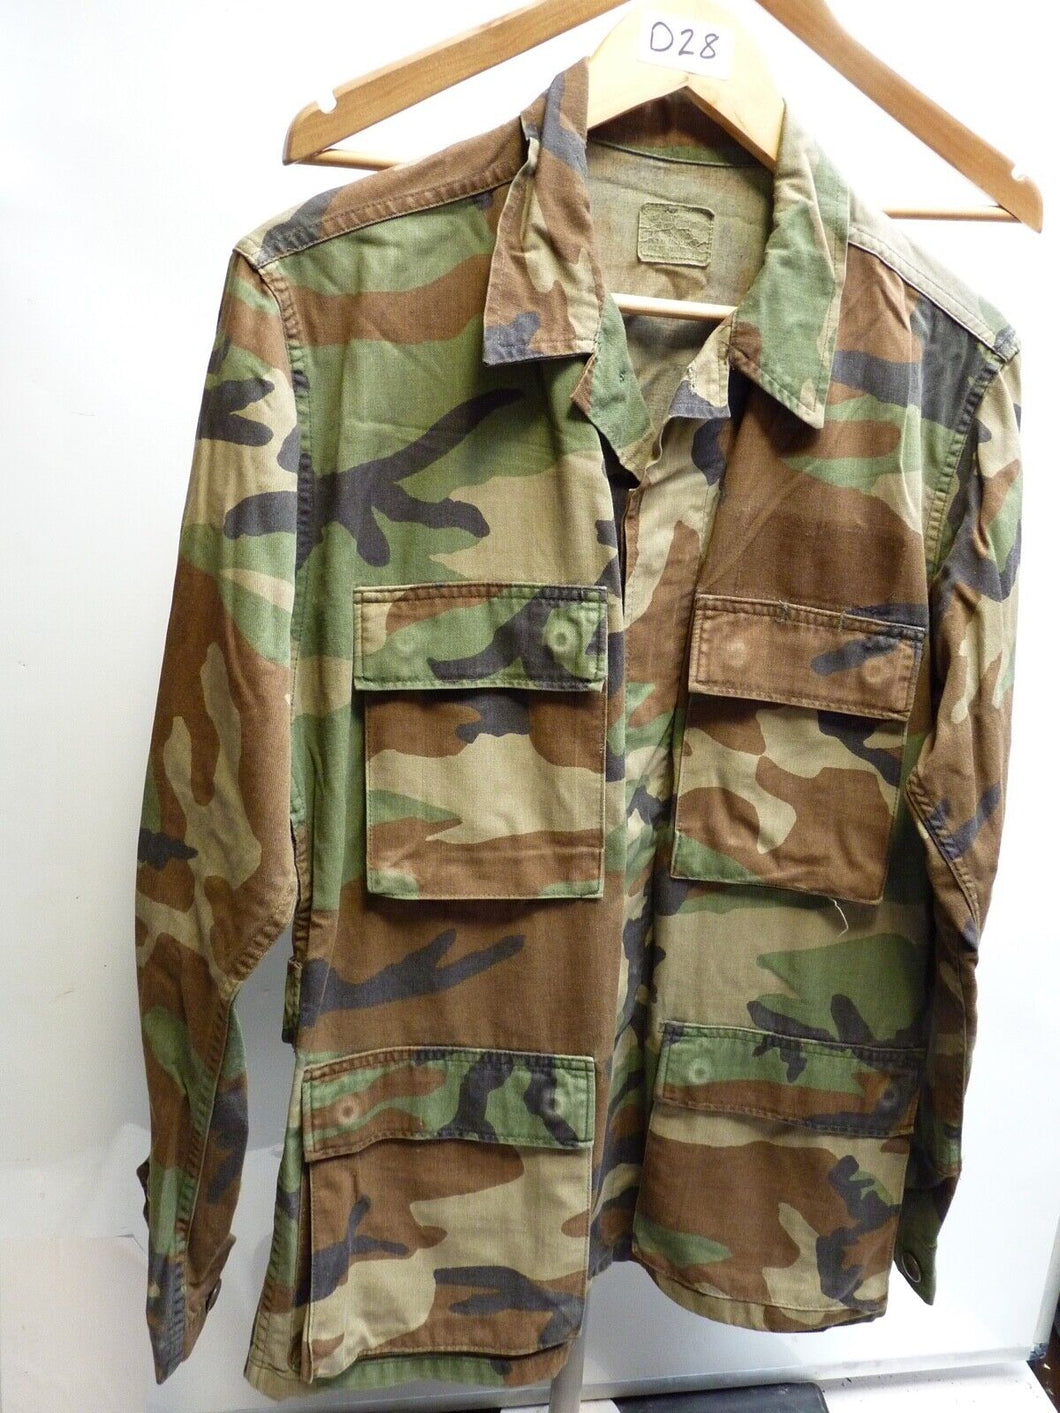 Genuine US Airforce Camouflaged BDU Battledress Uniform - 33 to 37 Inch Chest